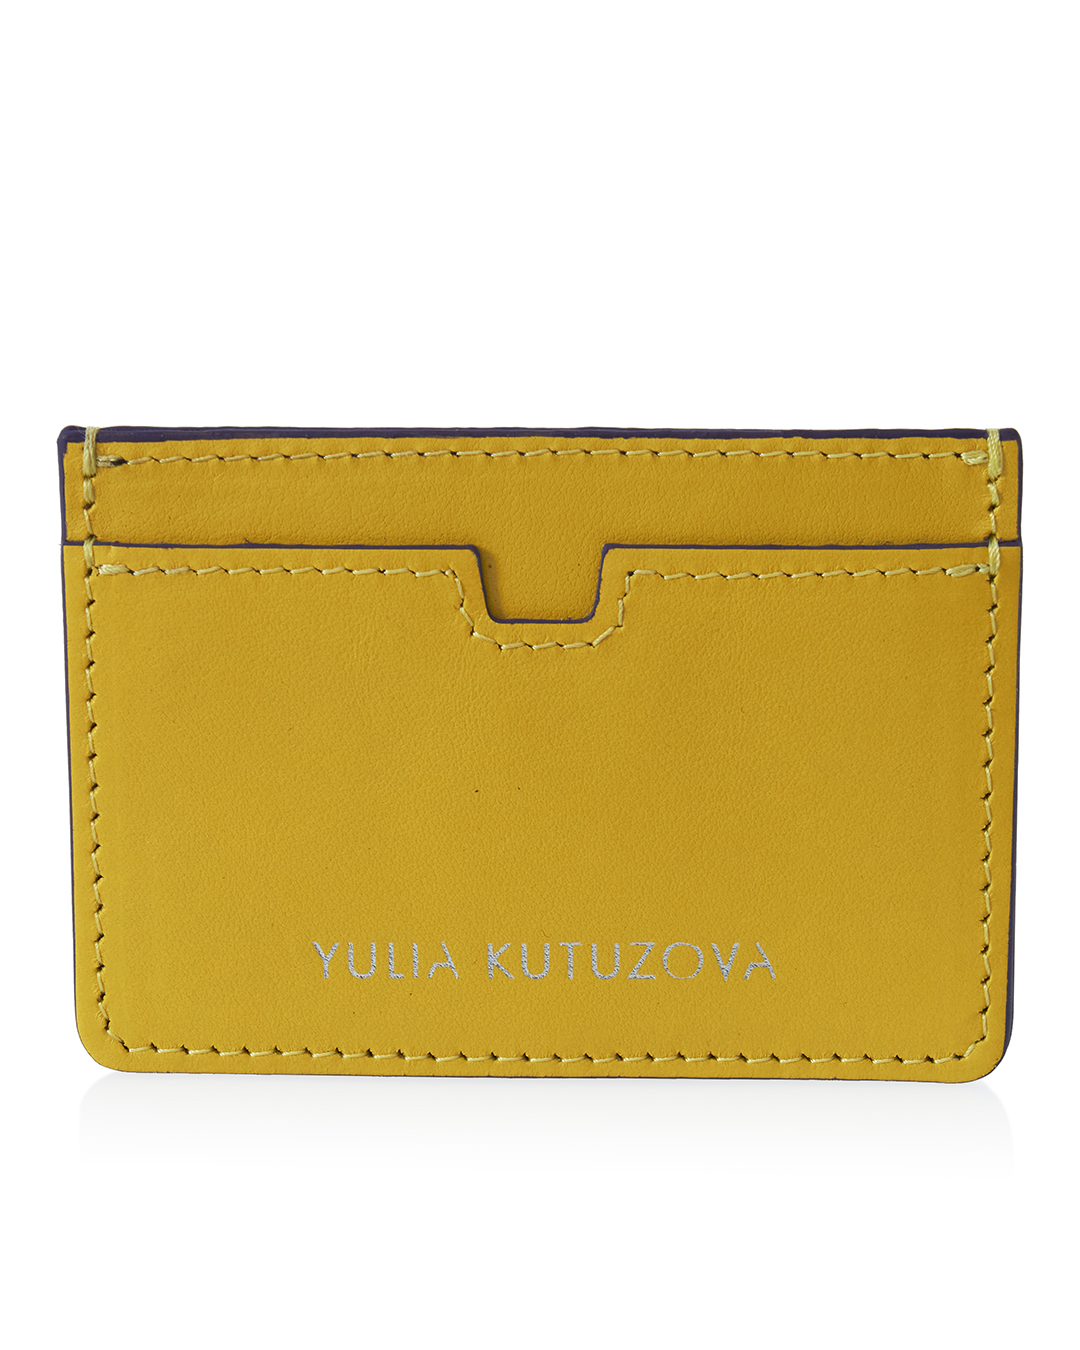 YULIA KUTUZOVA  артикул KRDH01-1938 марки YULIA KUTUZOVA купить за 4600 руб.